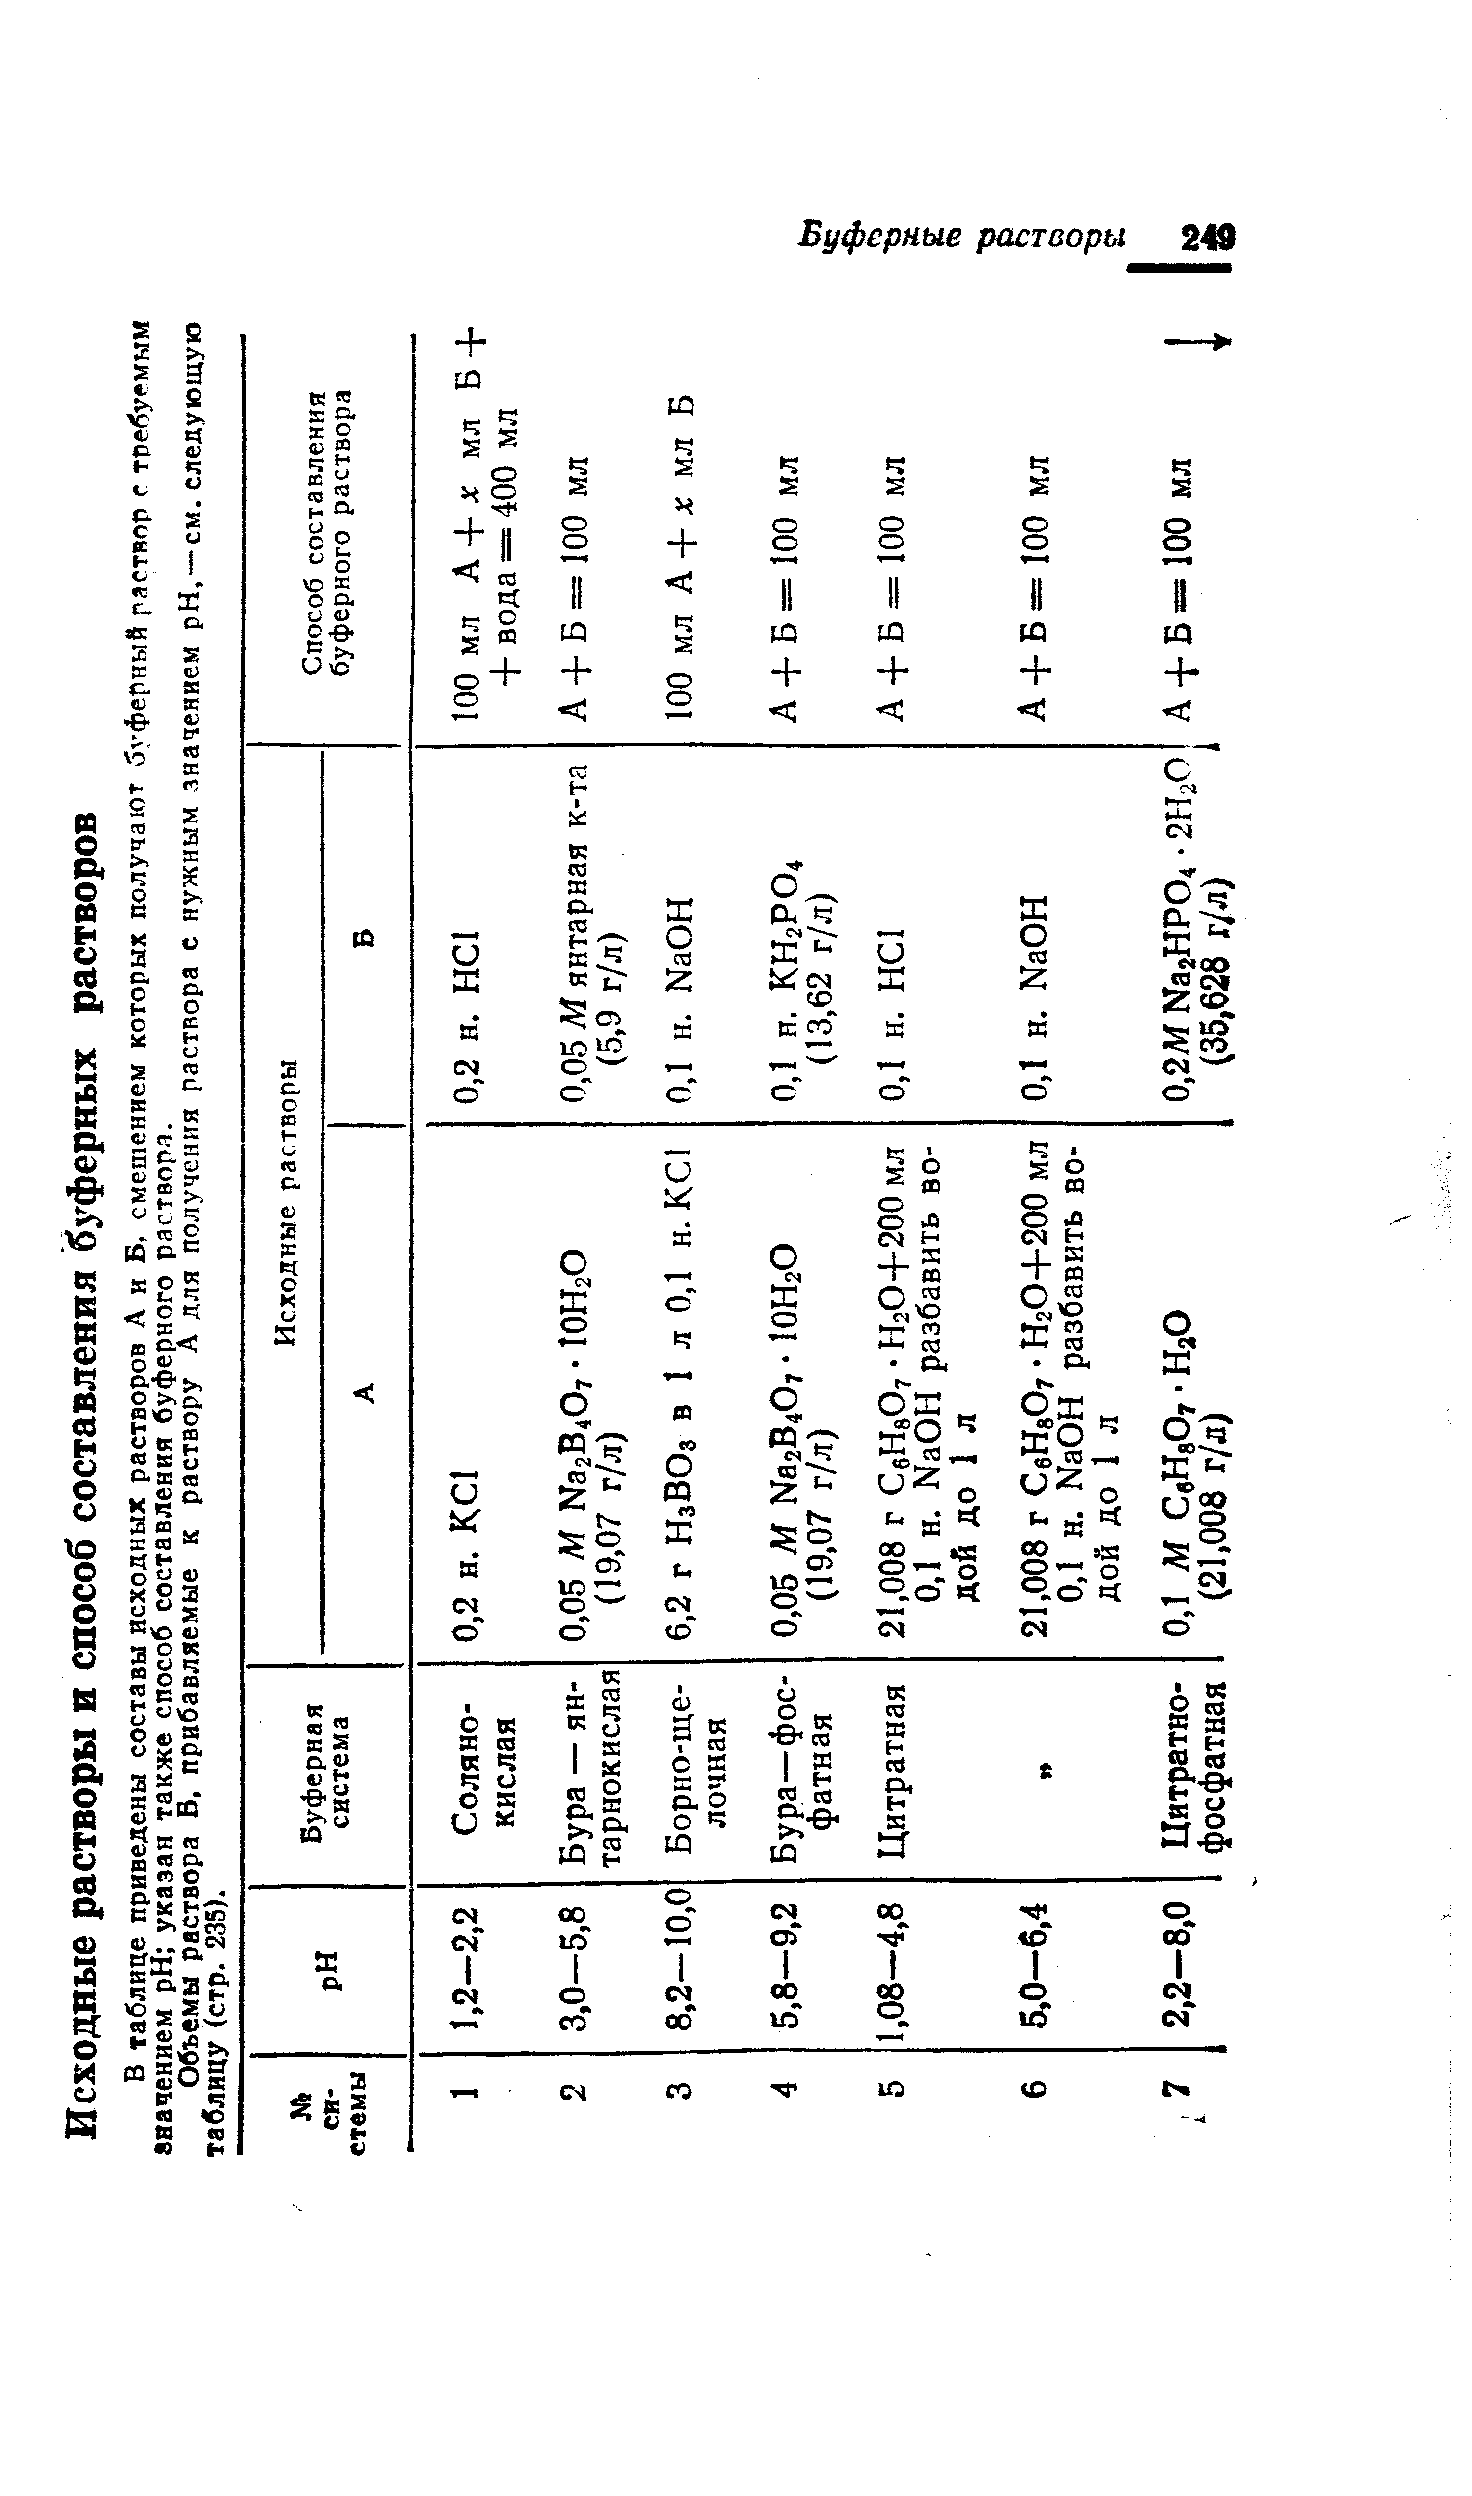 Объемы раствора В. прибавляемые к раствору А для получения раствора е нужным значением pH, —см. следующую таблицу (стр. 235).